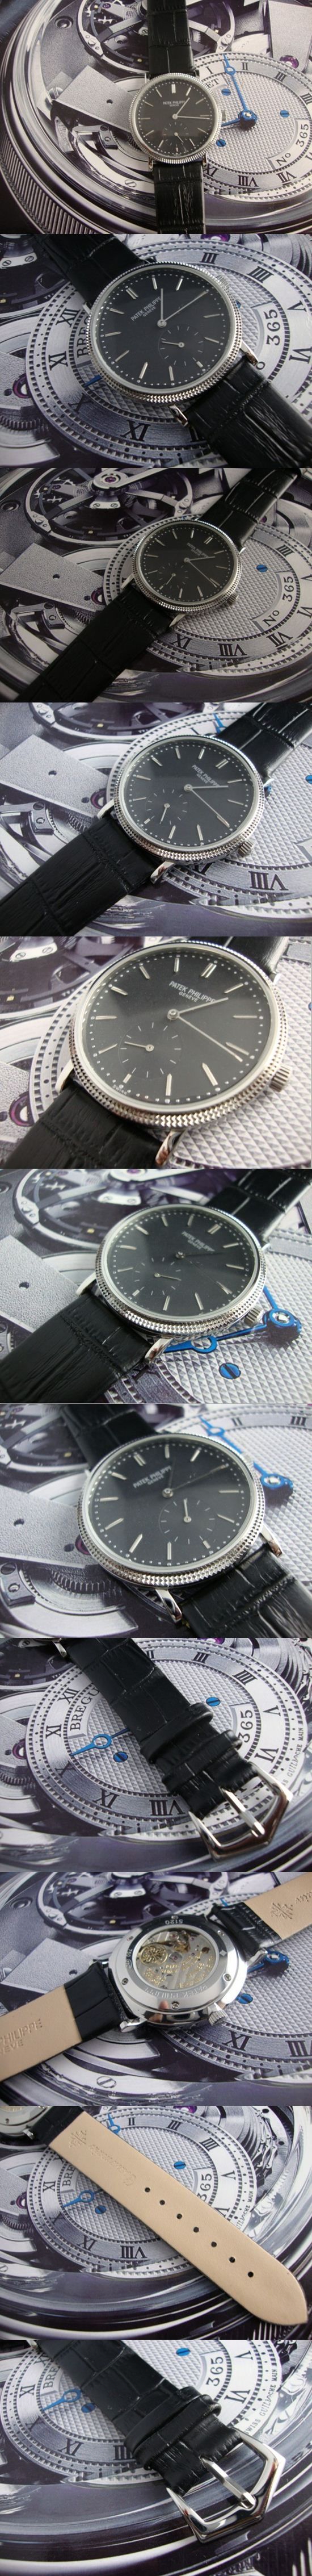 おしゃれなブランド時計がPATEK PHILIPPE-パテック フィリップ腕時計 パテック フィリップ 男/女腕時計 PATEK-PHILIPPE-N-012A を提供します.